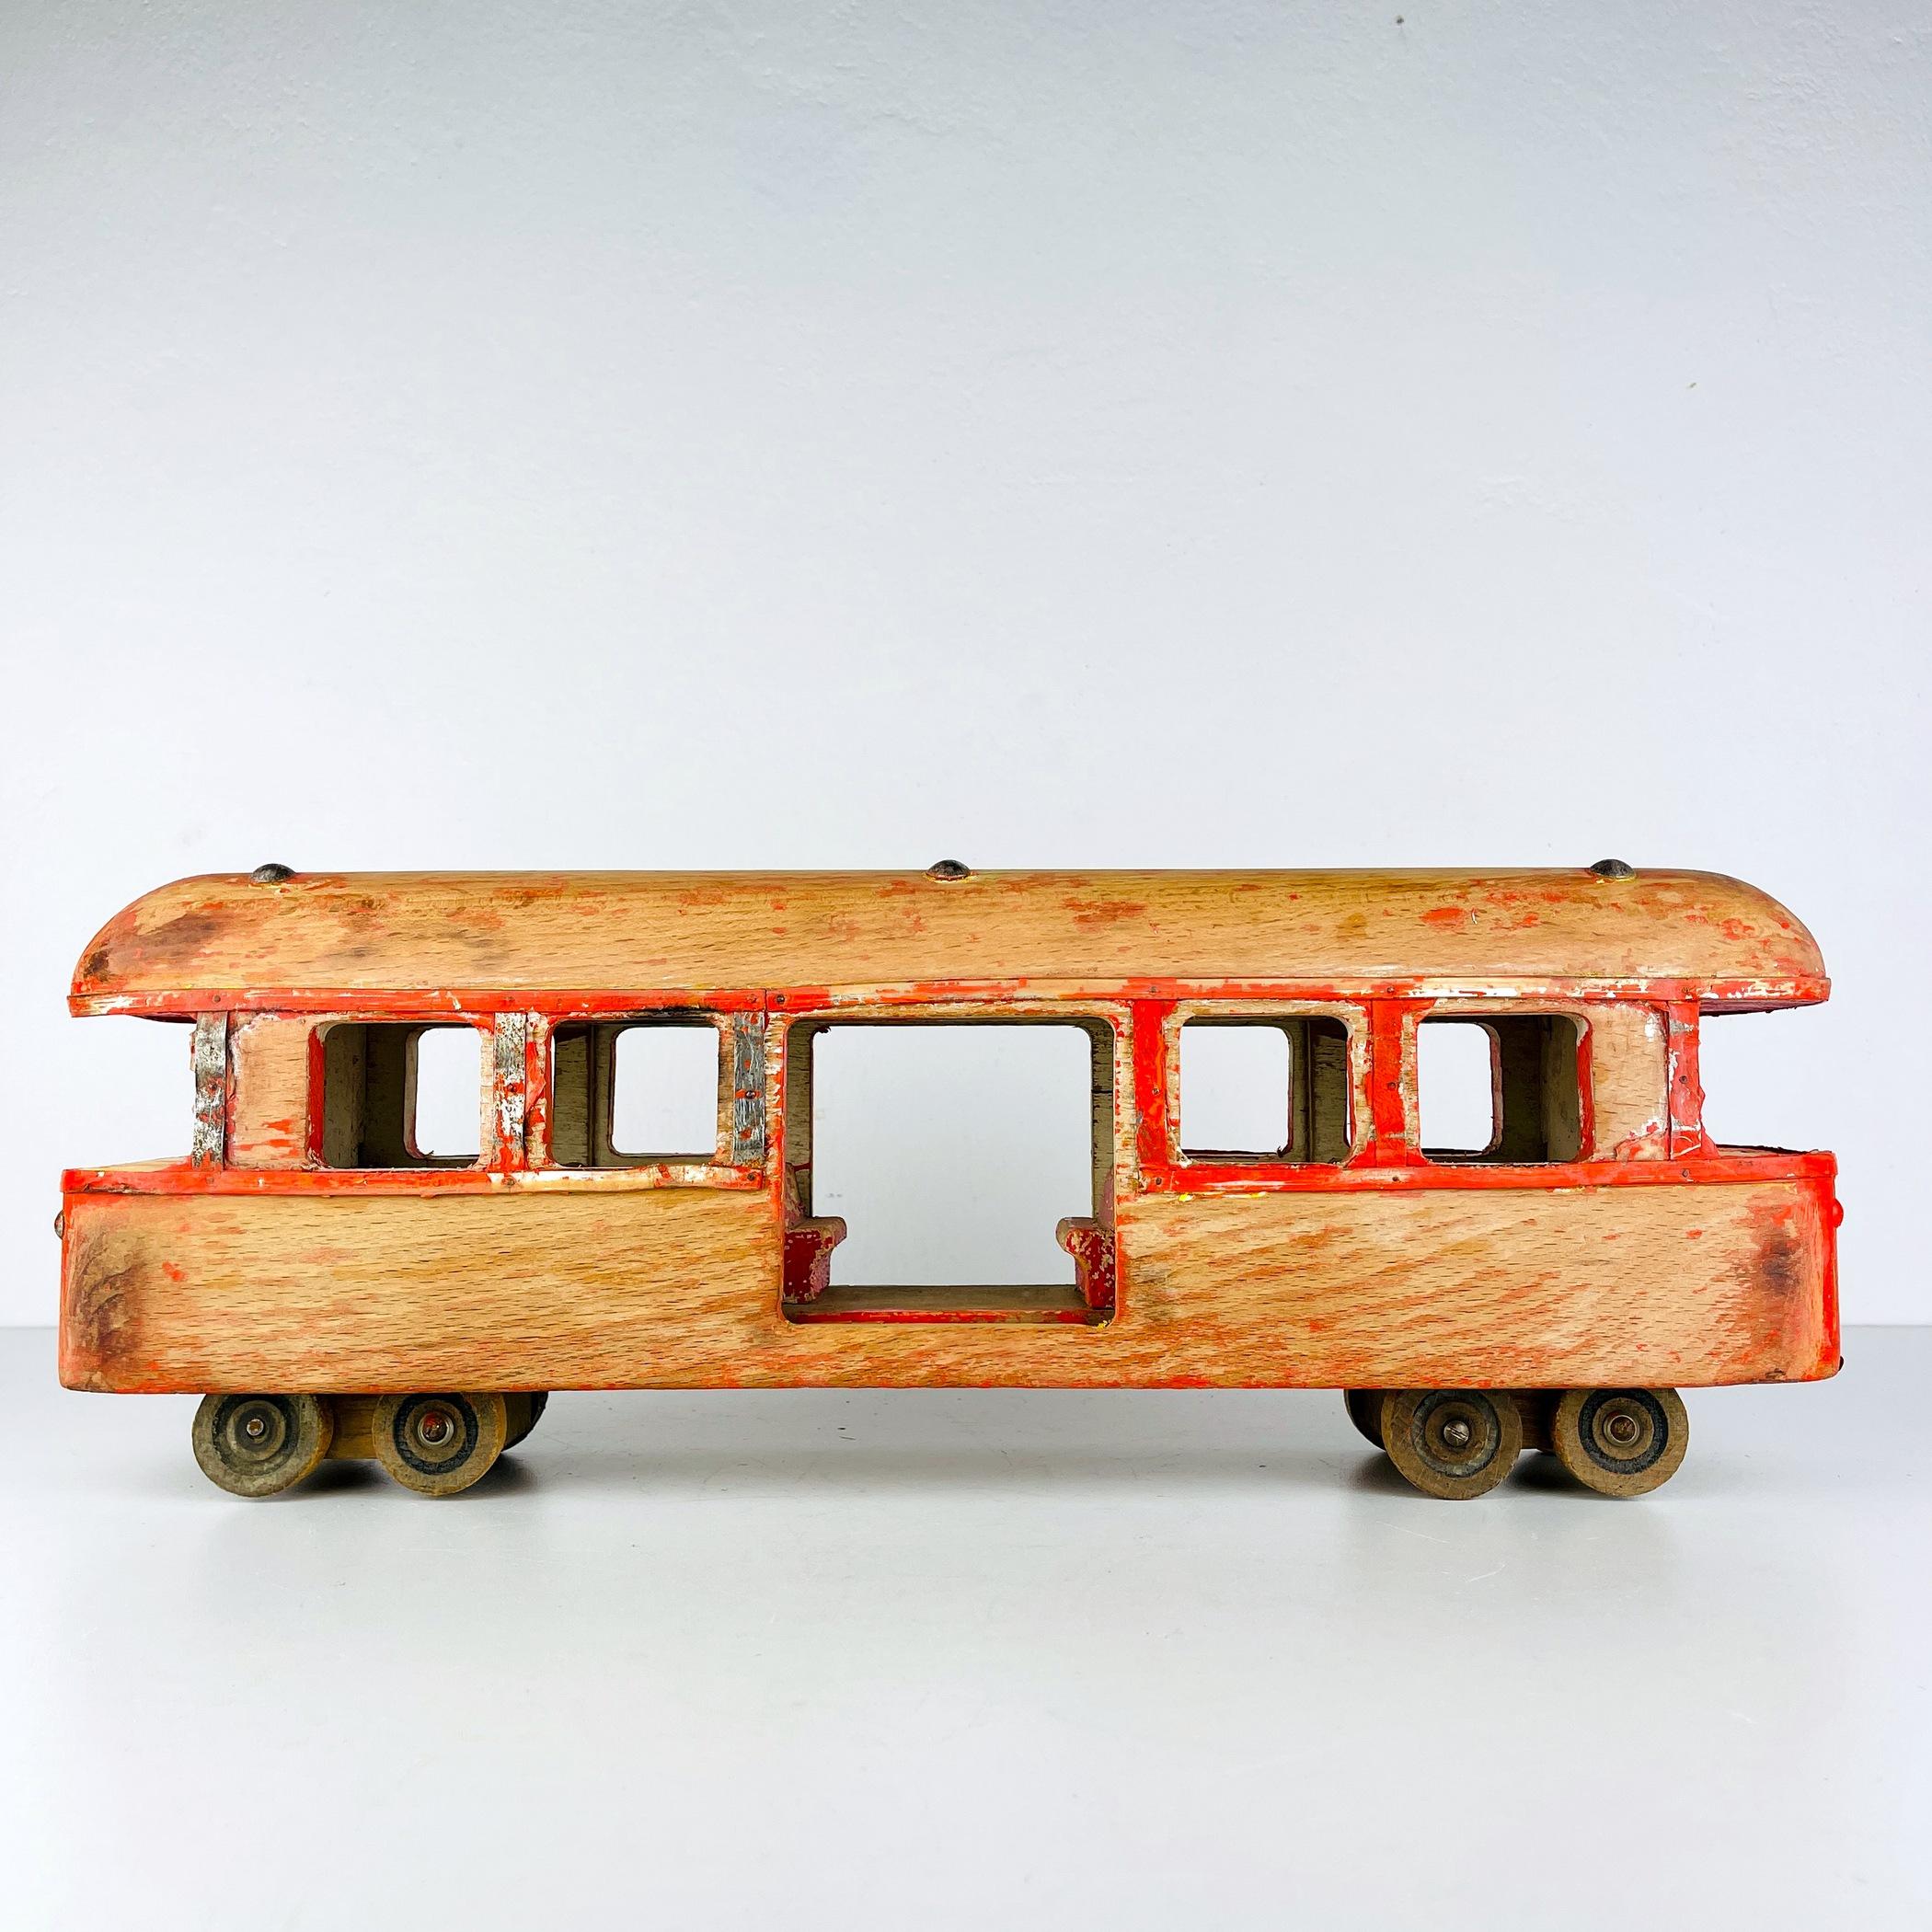 Wagon de chemin de fer en bois vintage d'Italie, années 1950 - Grande pièce décorative avec peinture d'origine partiellement préservée Retournez dans le passé avec cet incroyable morceau d'histoire - un wagon de chemin de fer en bois vintage